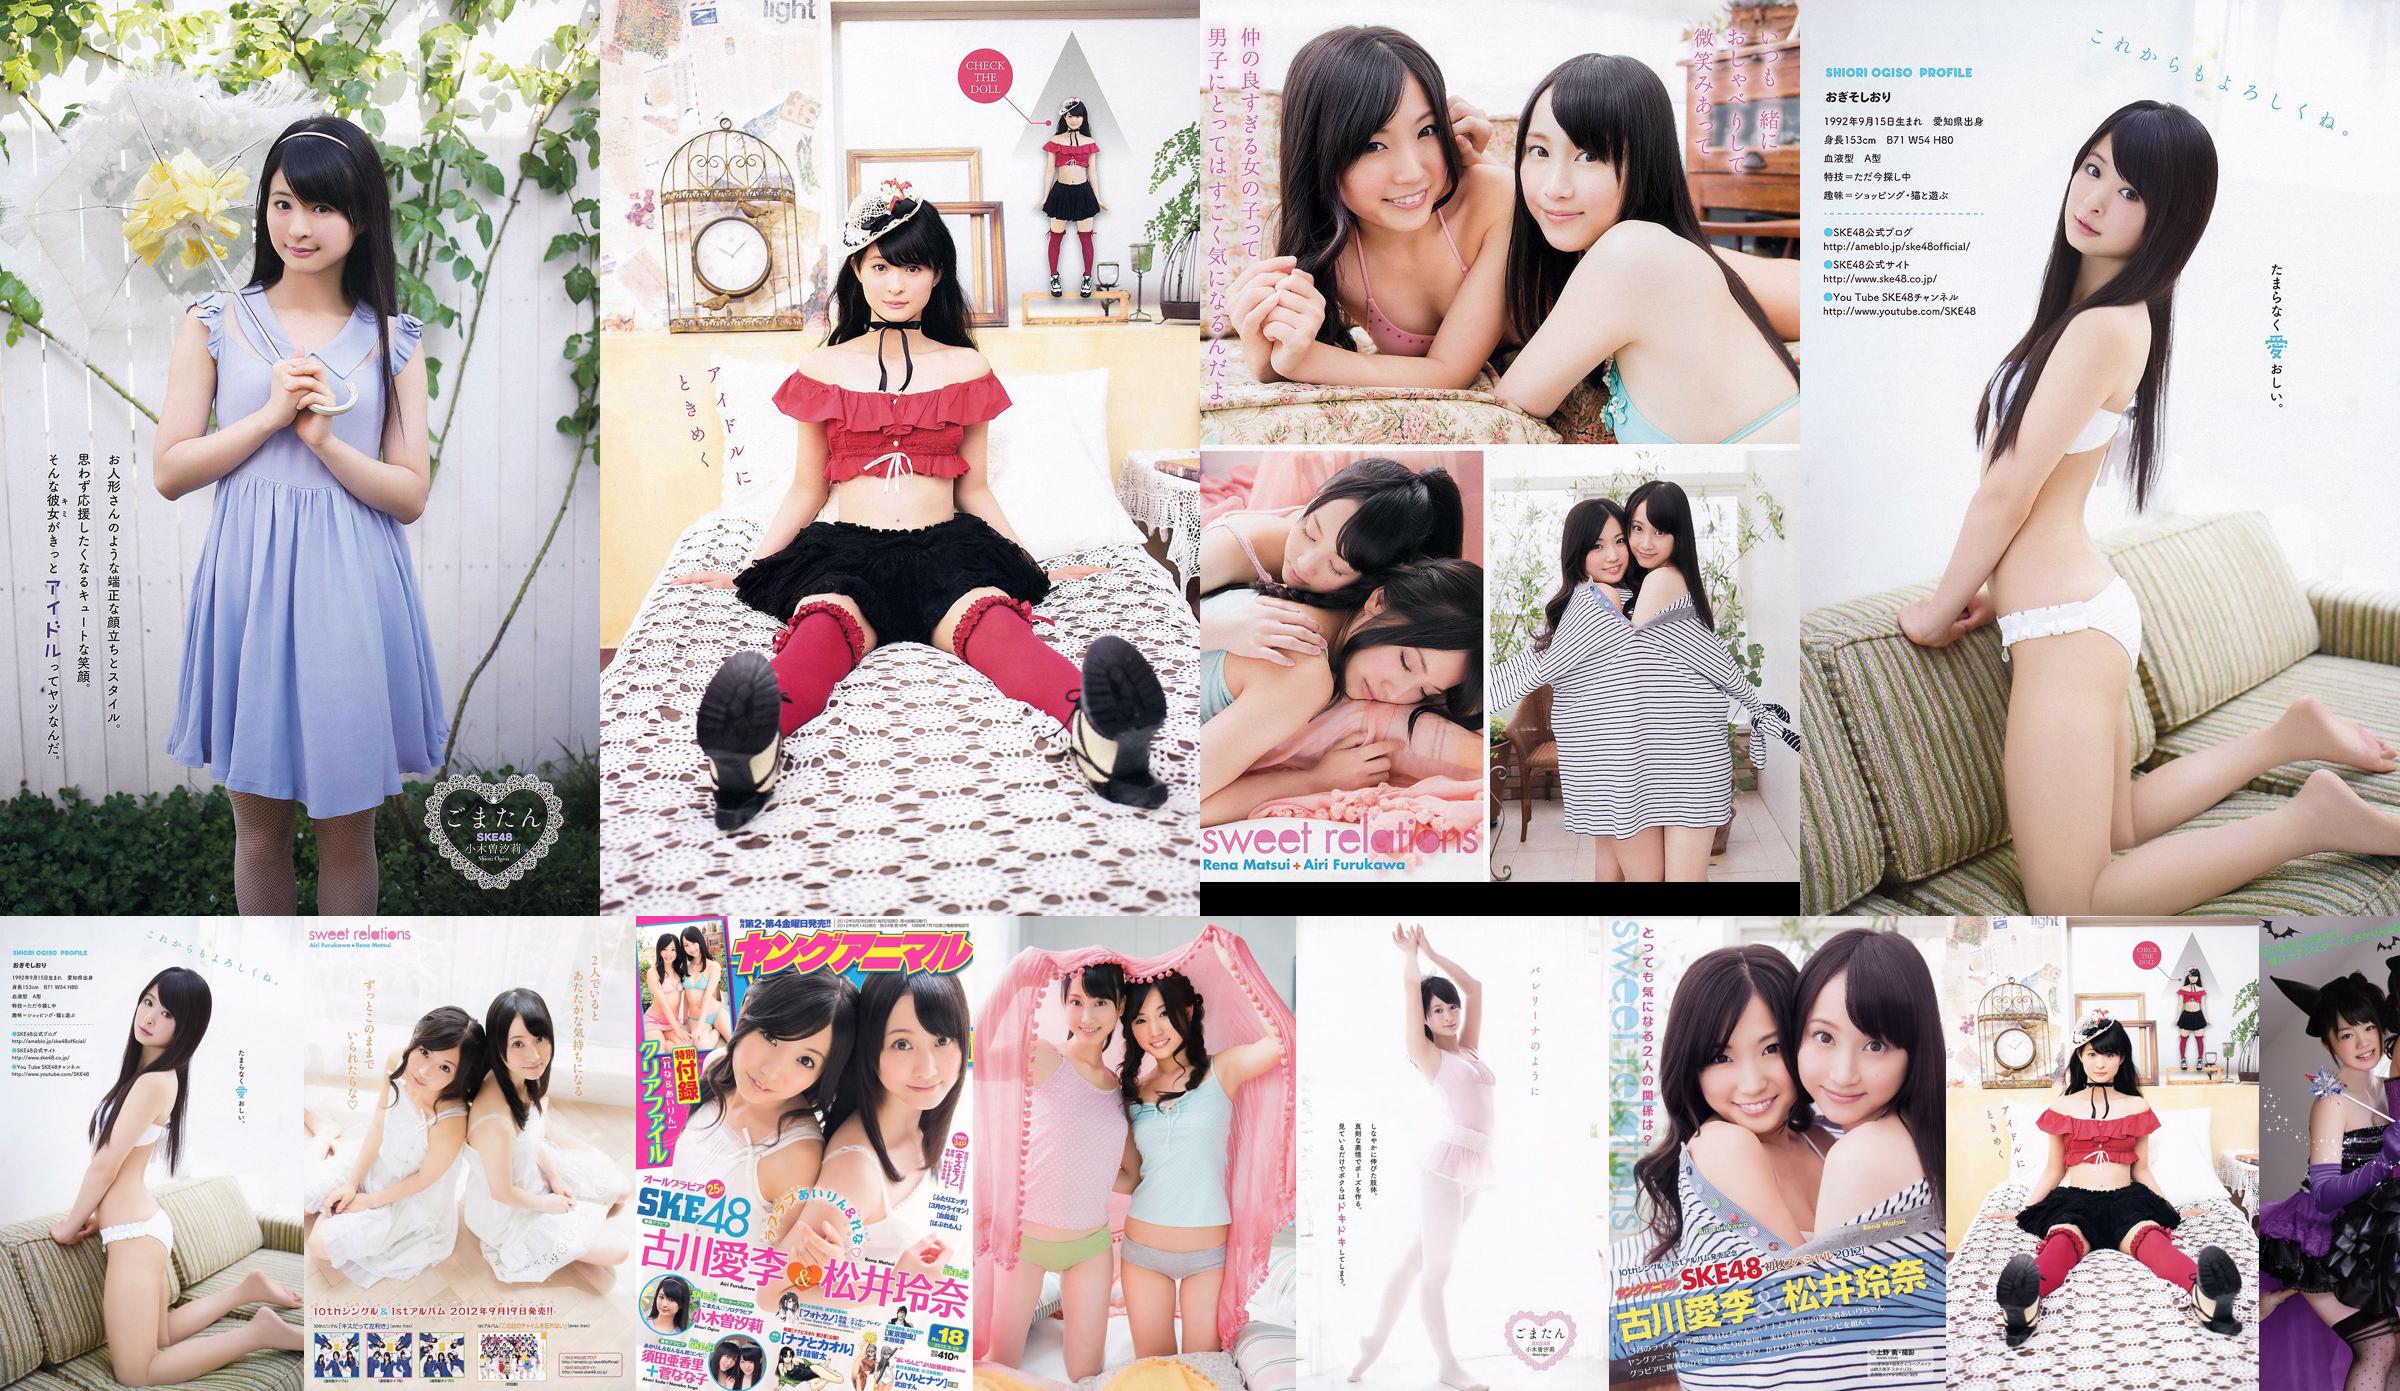 Ai Li Furukawa, Rena Matsui, Sasa Ogi, Aikari Suda [Young Animal] 2012 No.18 Photo Magazine No.49aa4a Page 1